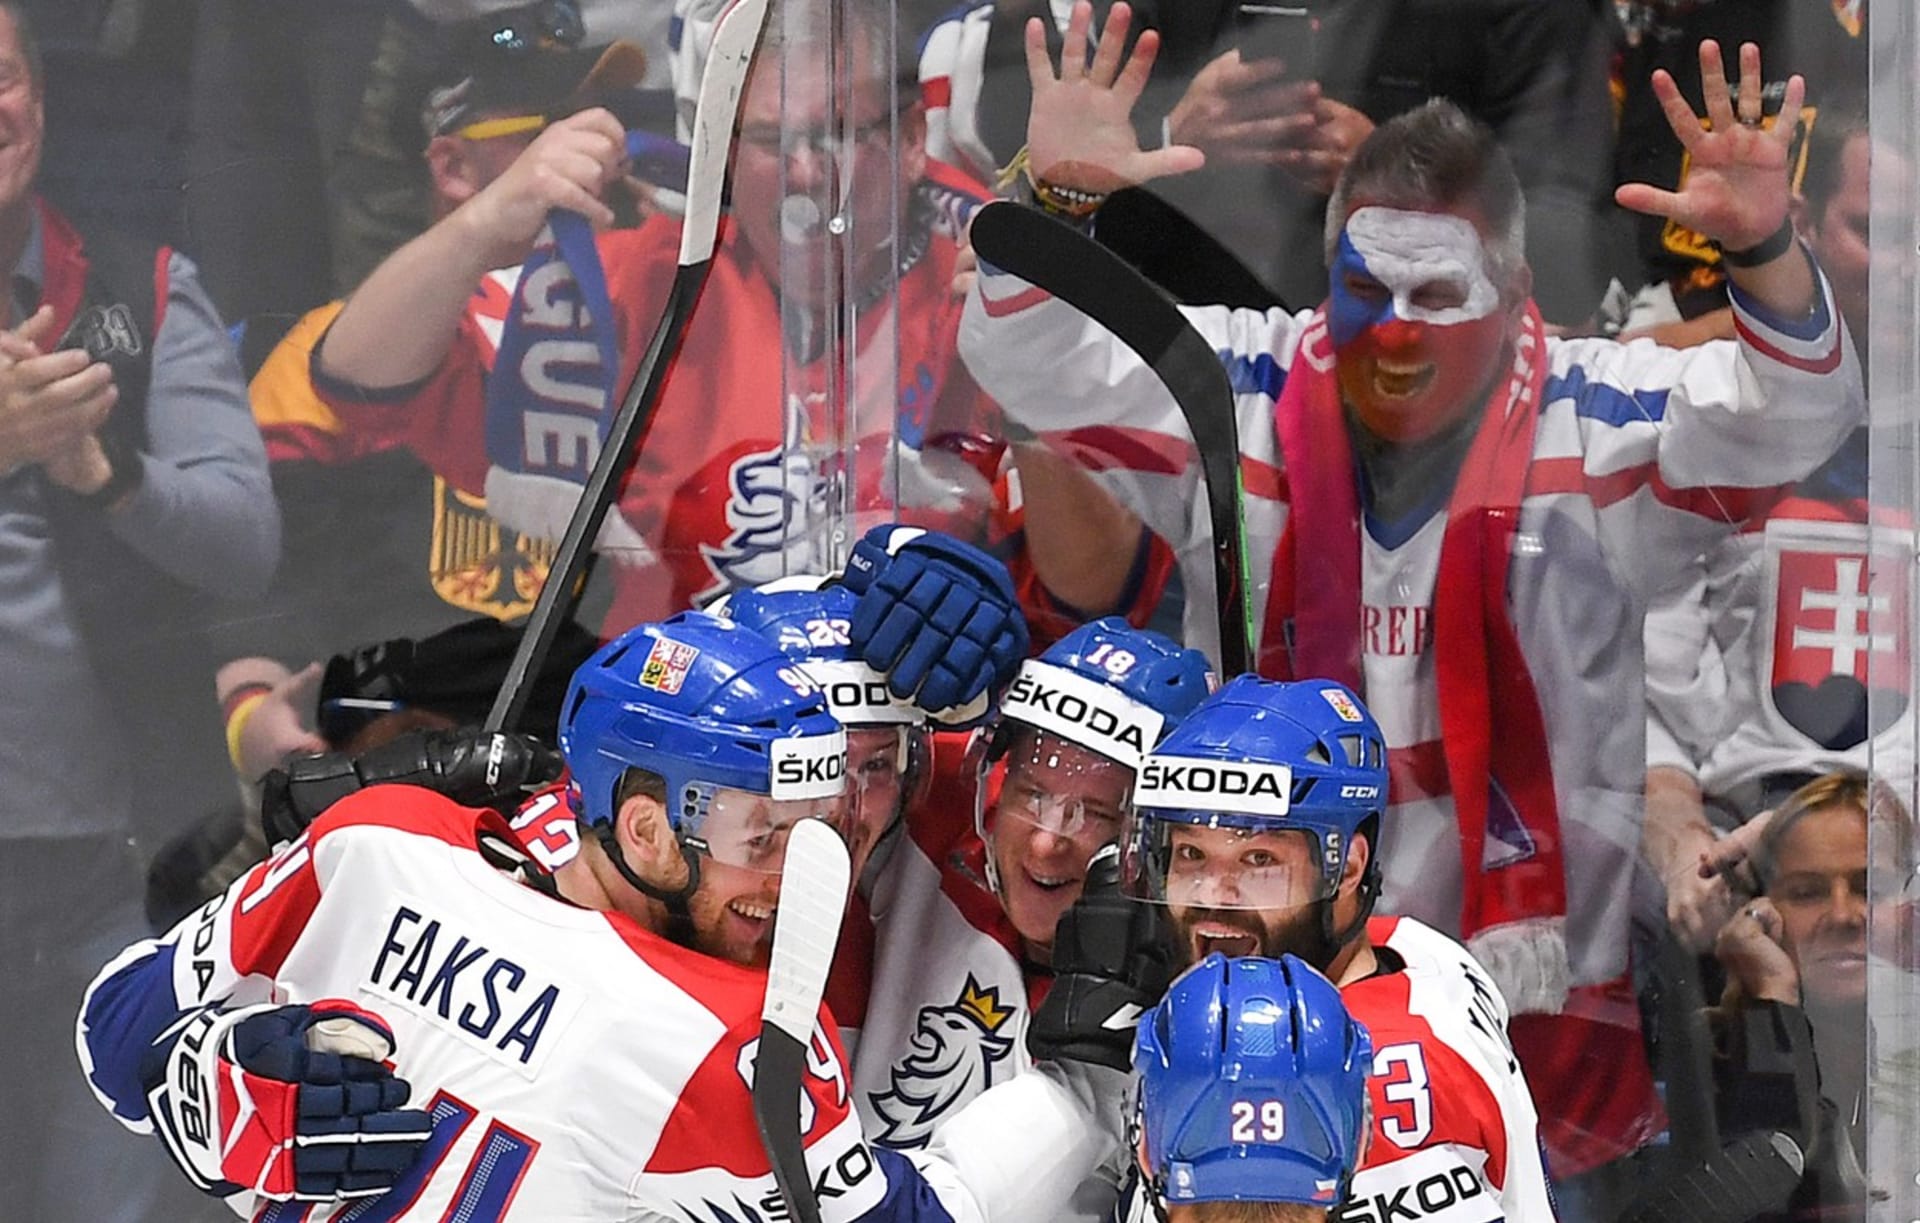 Naposledy mohli čeští fanoušci v hojném počtu sledovat mistrovství světa v hokeji v roce 2019 (na snímku). Nyní po třech letech mohou zamířit do Finska, musí však dodržet určitá pravidla.